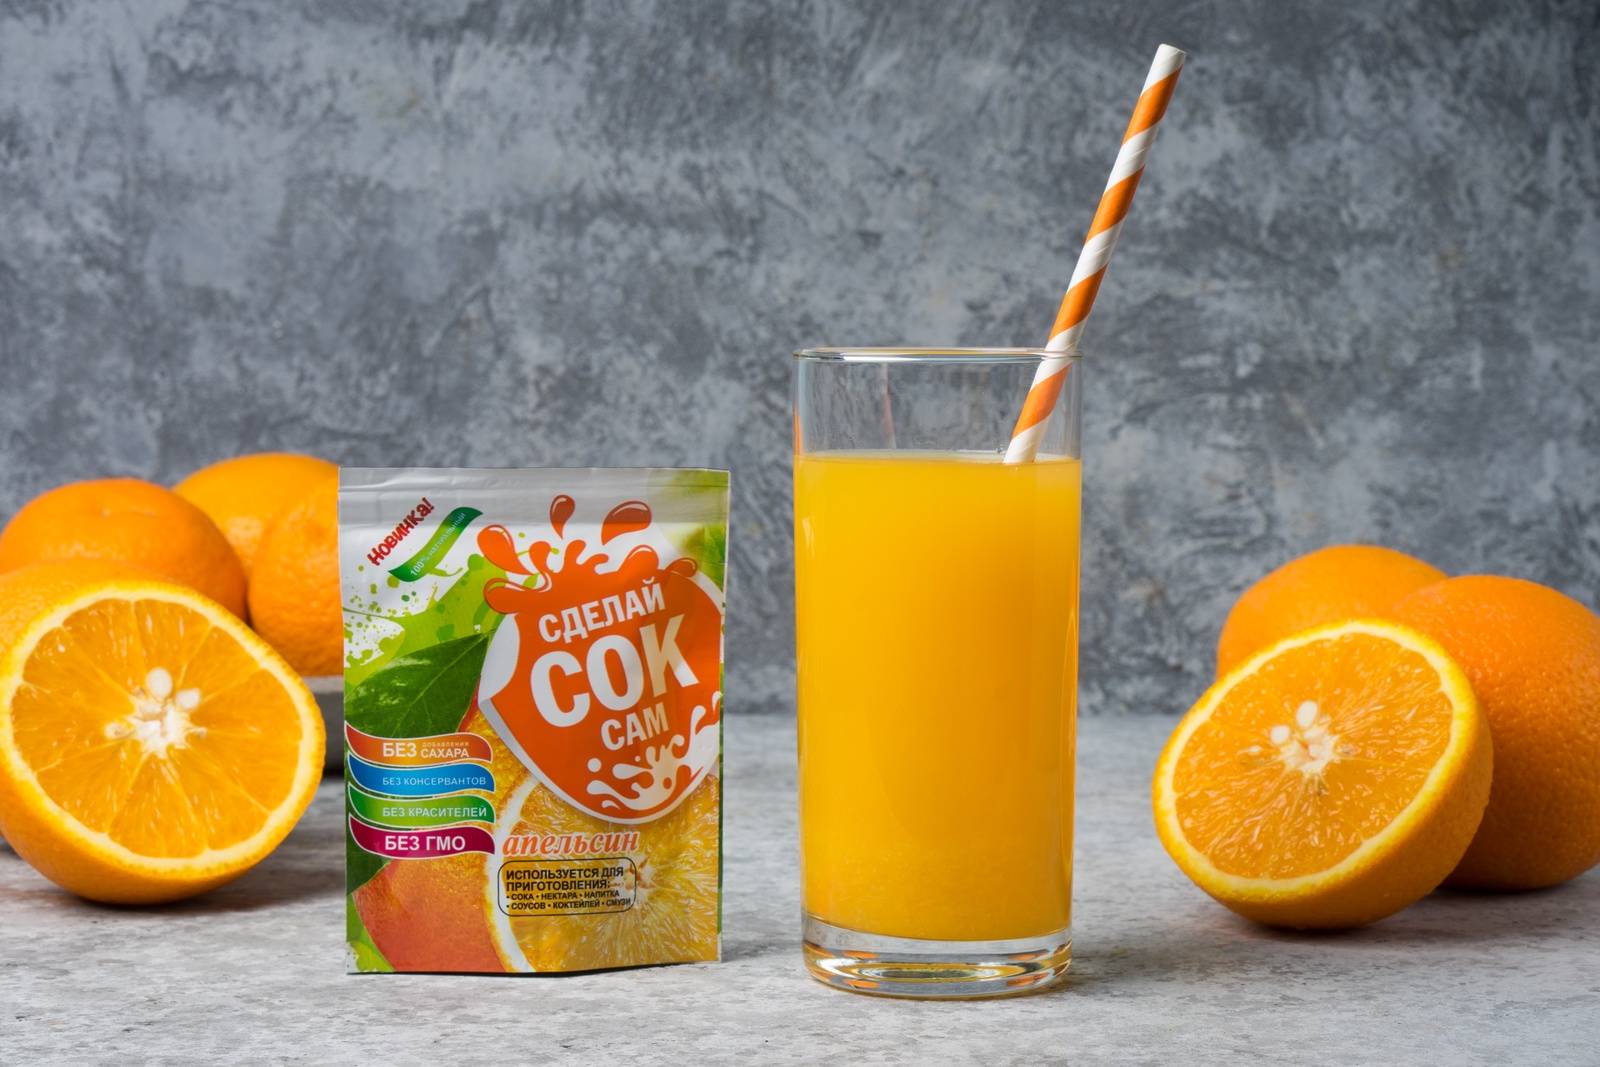 Апельсиновый сок: польза и вред